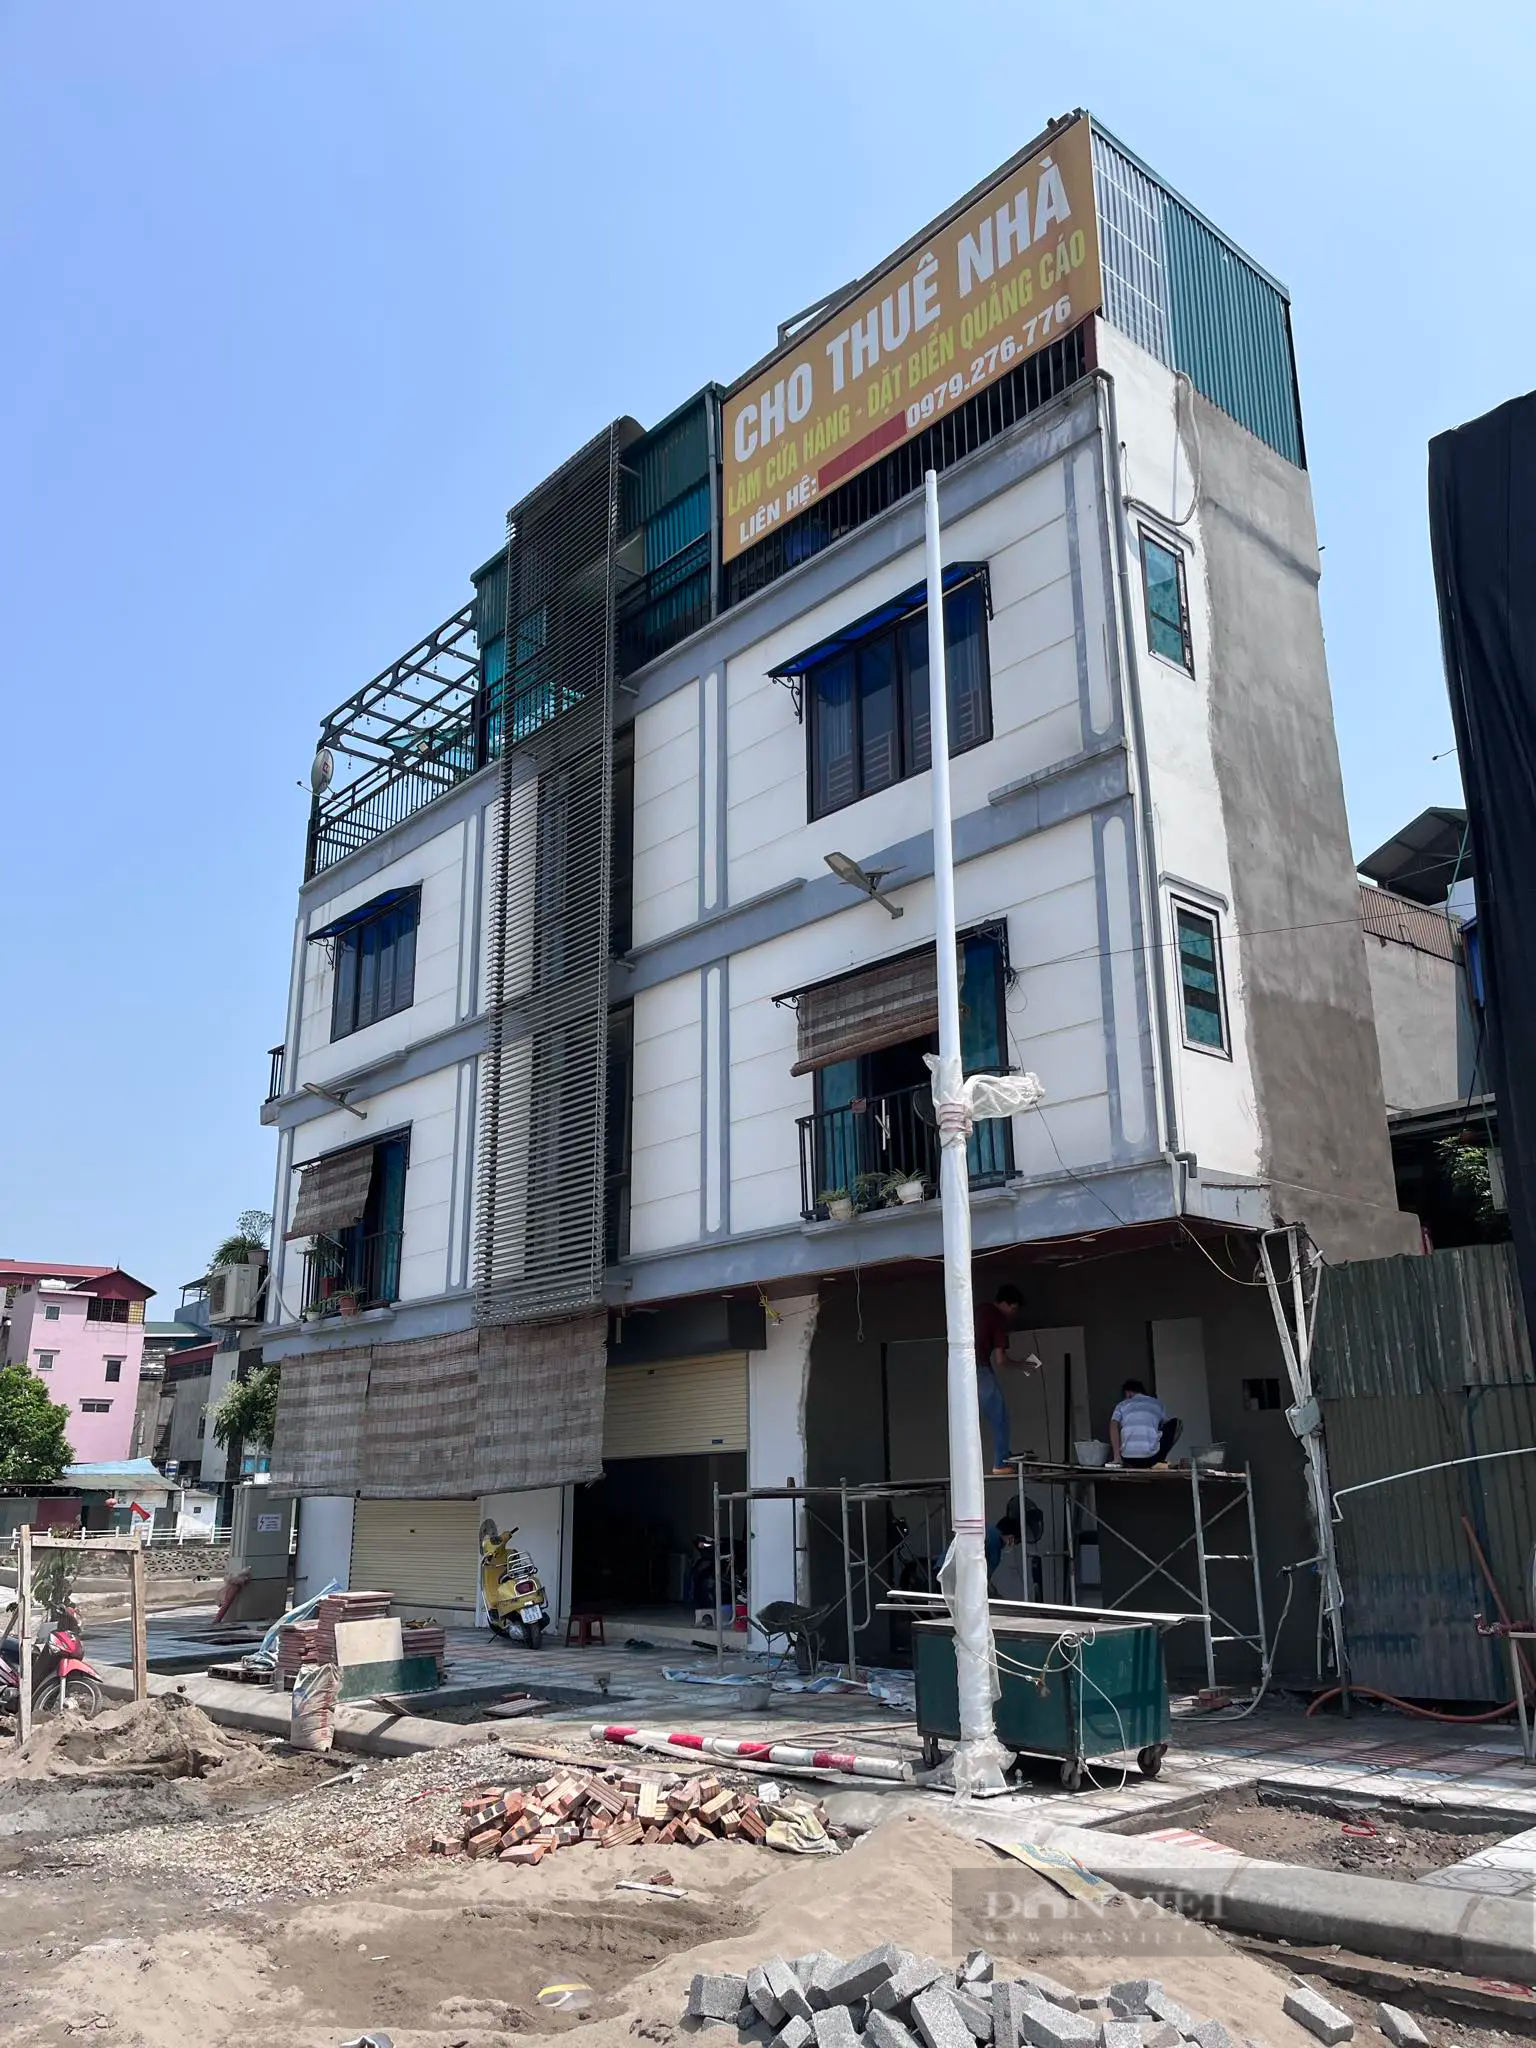 Nội dung người dân tố cáo căn nhà xây lấn chỉ giới tuyến đường 1.200 tỷ đồng tại Long Biên (Hà Nội) là đúng- Ảnh 1.